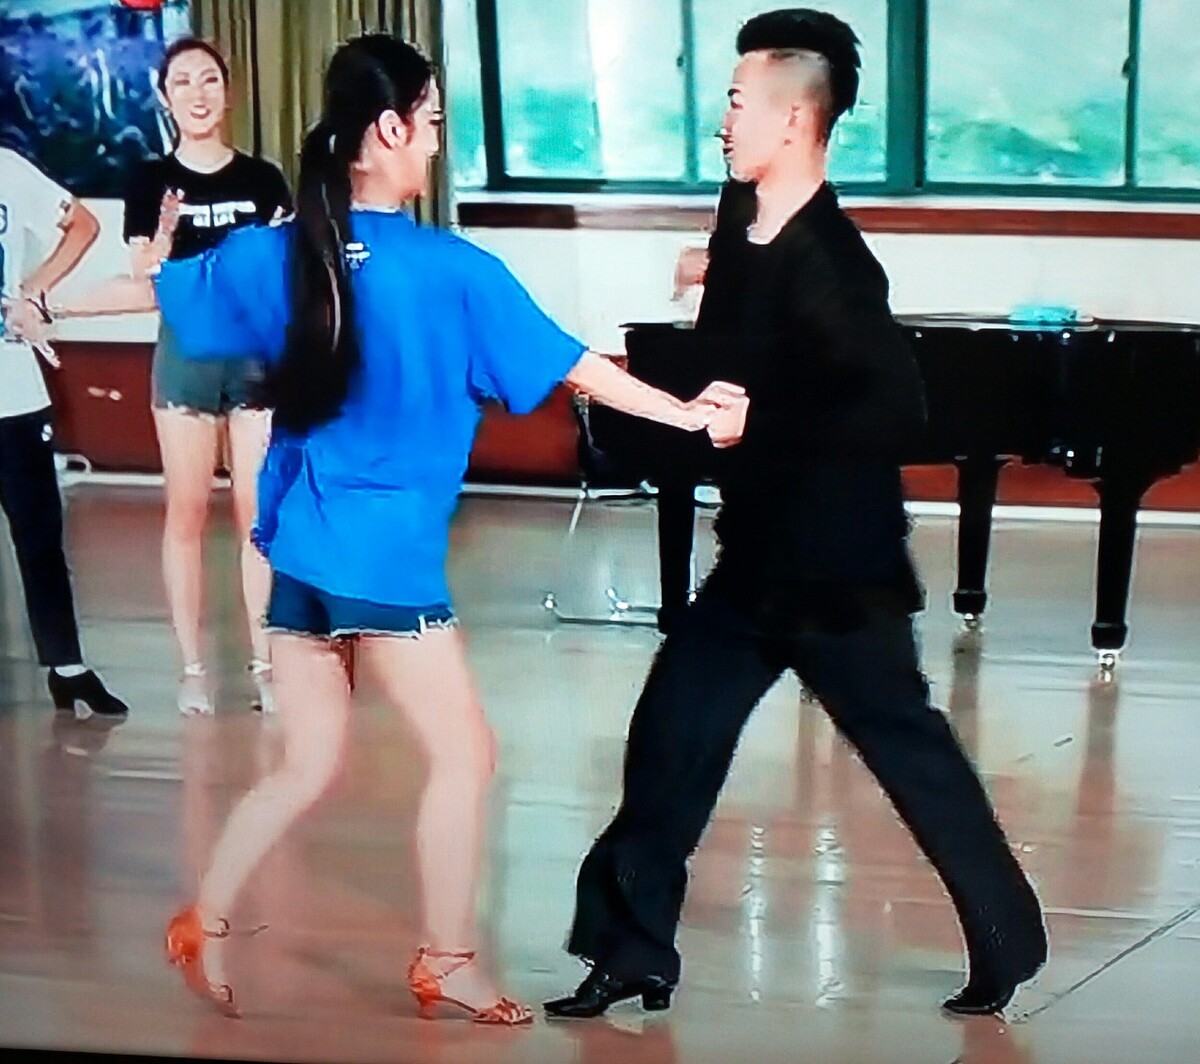 蒙古舞蹈基本动作抖肩,蒙古民族舞蹈入门基本动作是肩部动作